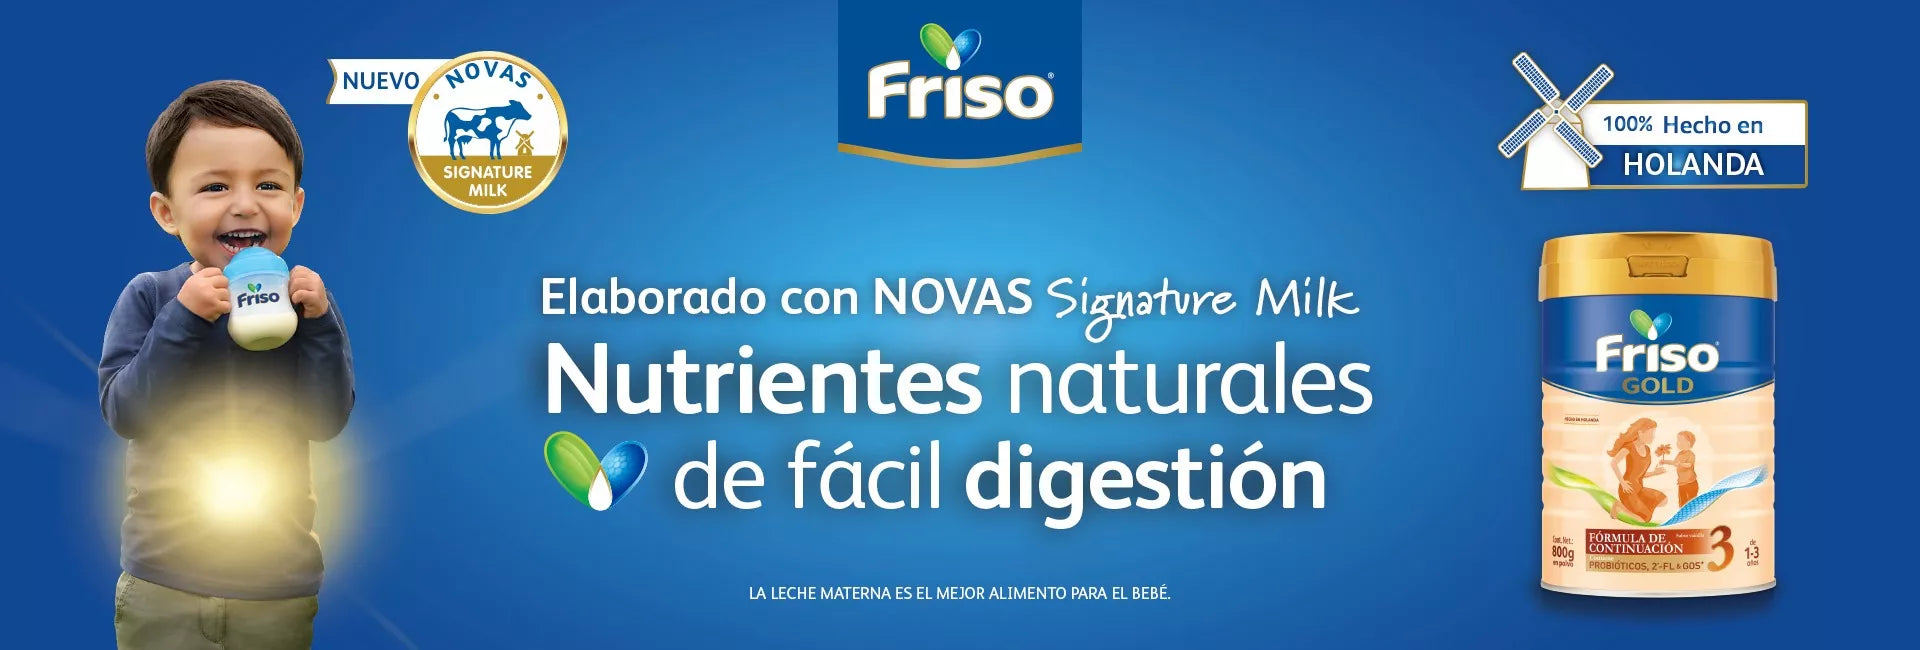 Elaborado con NOVAS Signature milk, Nutrientes naturales de fácil digestion